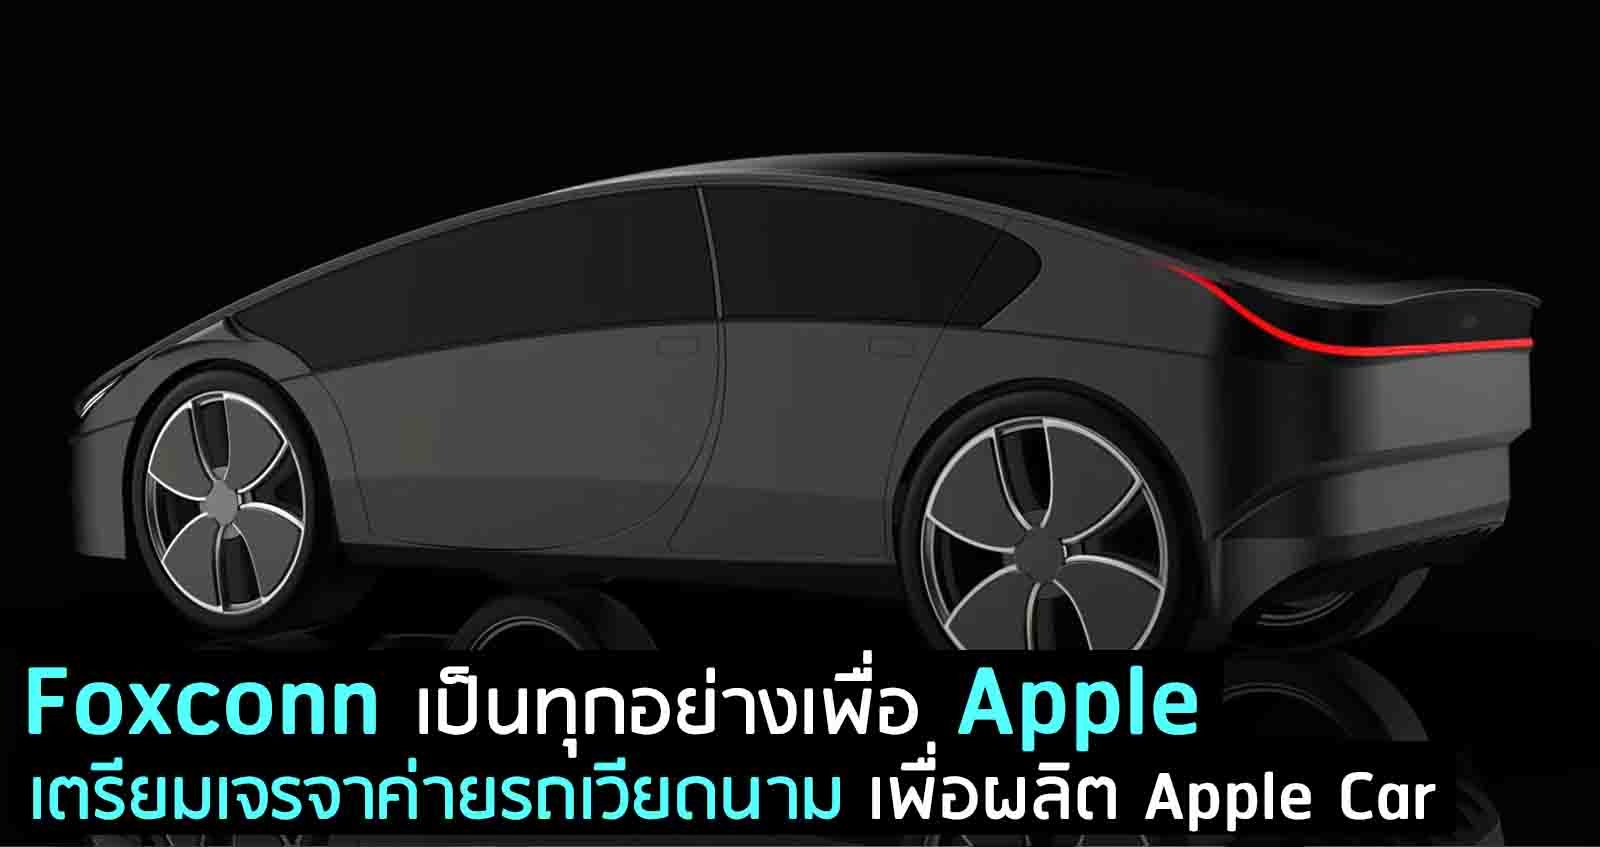 Foxconn เป็นทุกอย่าง เตรียมเจรจาค่ายรถเวียดนาม เพื่อผลิต Apple Car